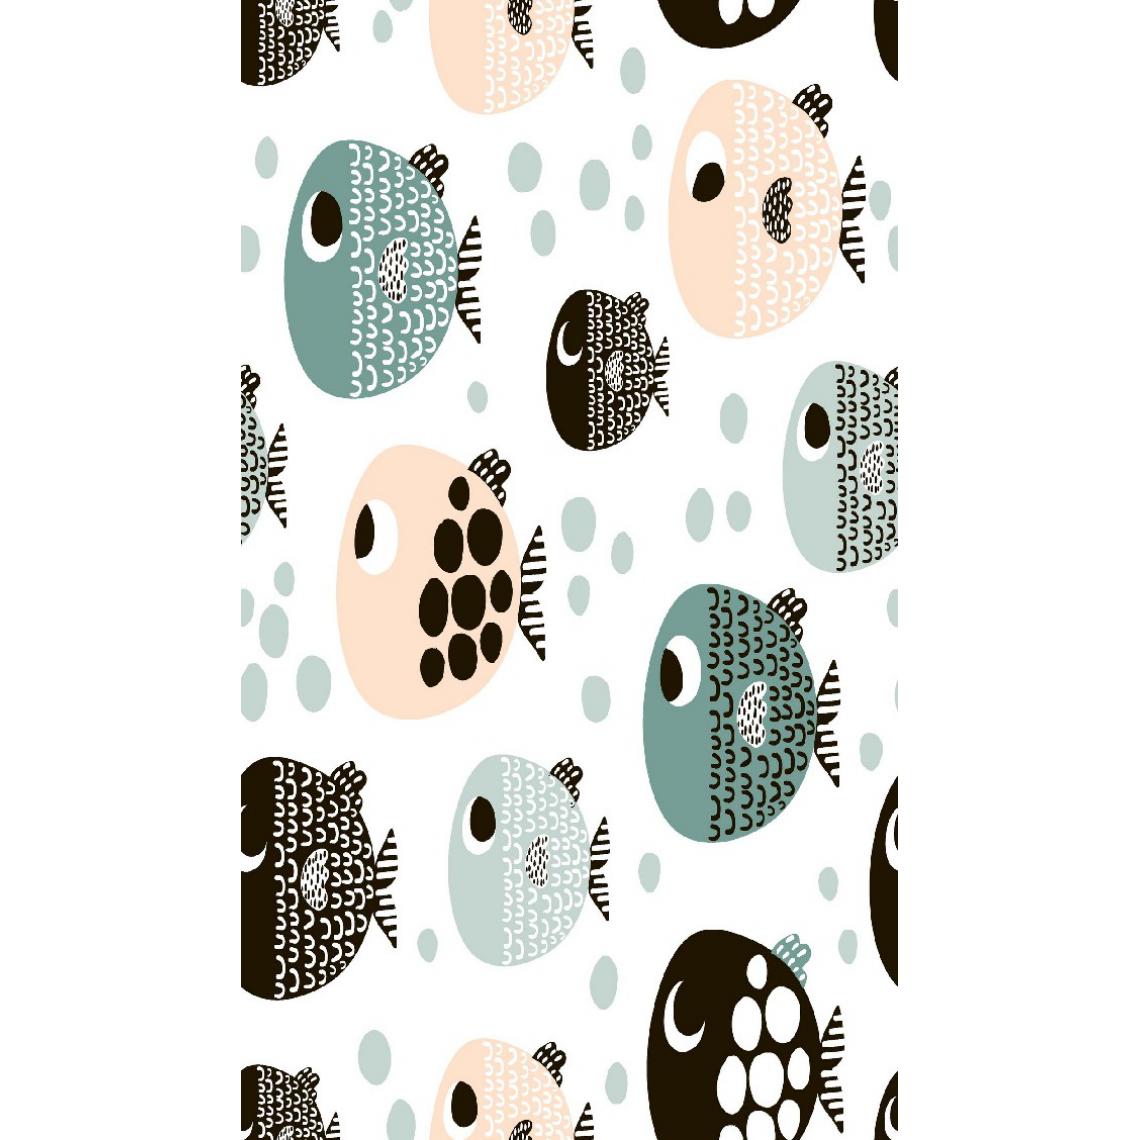 Homemania - HOMEMANIA Tapis Imprimé Little Fish 1 - pour les enfants - Décoration de Maison - antidérapants - Pour Salon, séjour, chambre à coucher - Multicolore en Polyester, Coton, 100 x 200 cm - Tapis